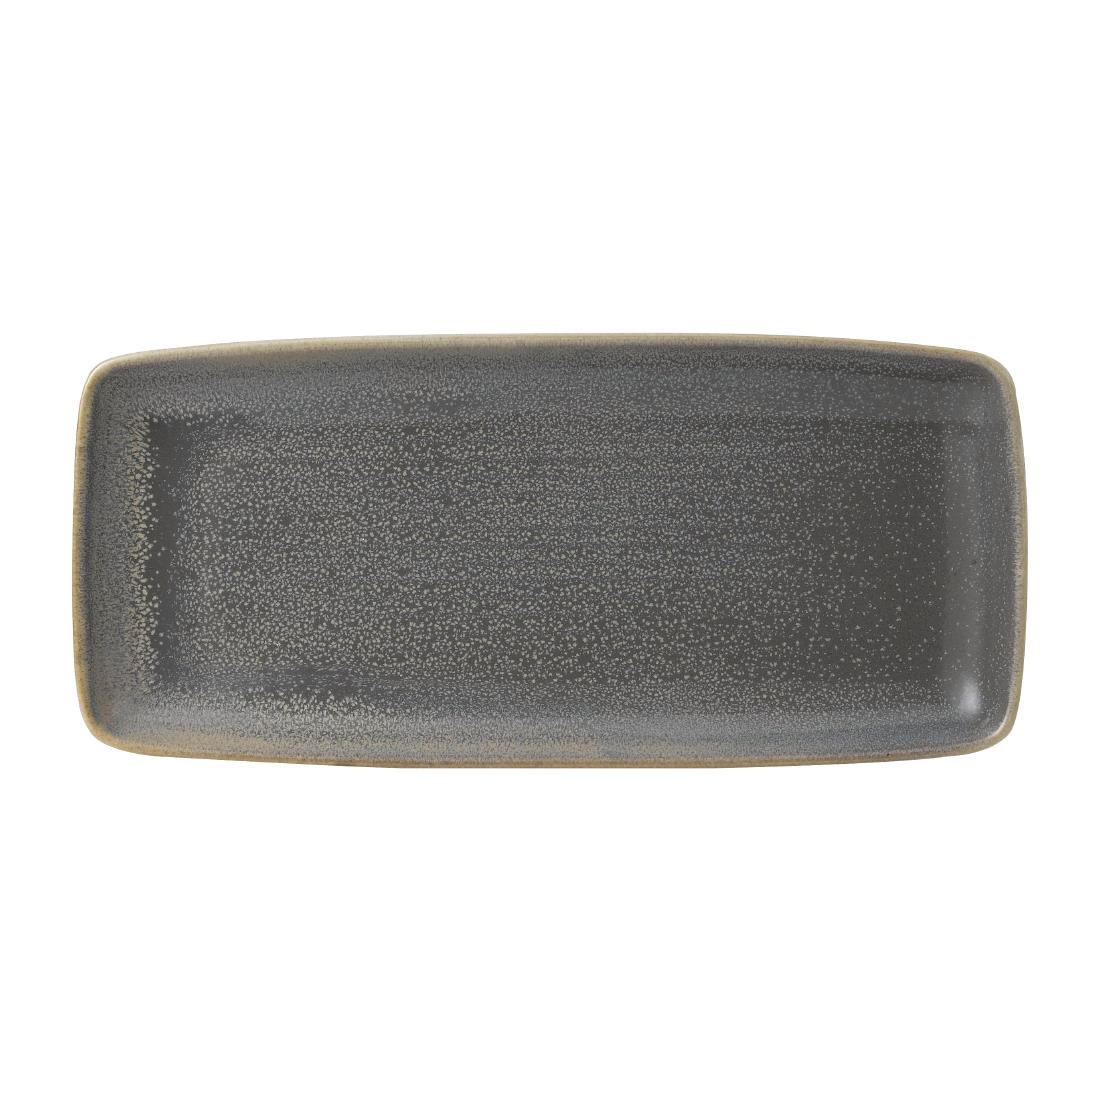 Dudson Evo Granite Rectangular Tray 270 x 124mm (Pack of 6)